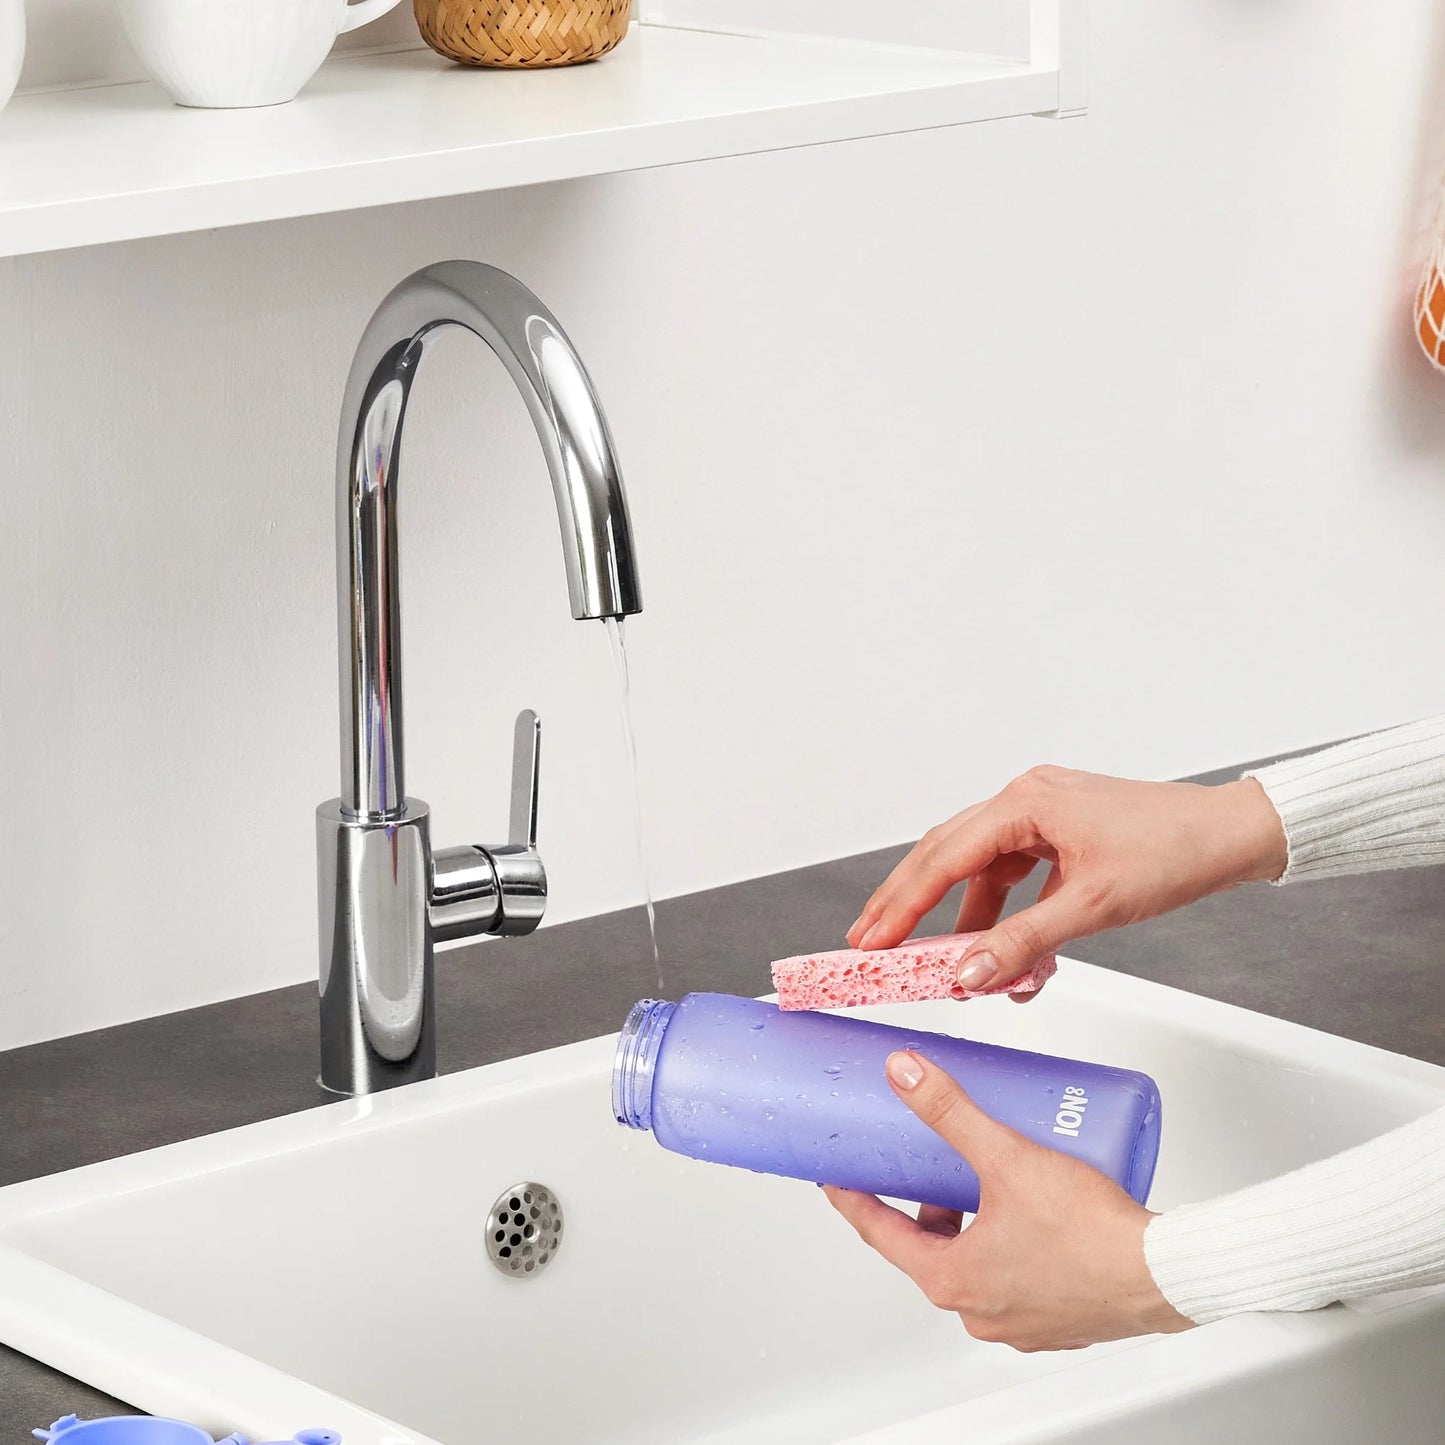 Leak Proof Slim Water Bottle, Recyclon™, Light Purple, 500ml (18oz)